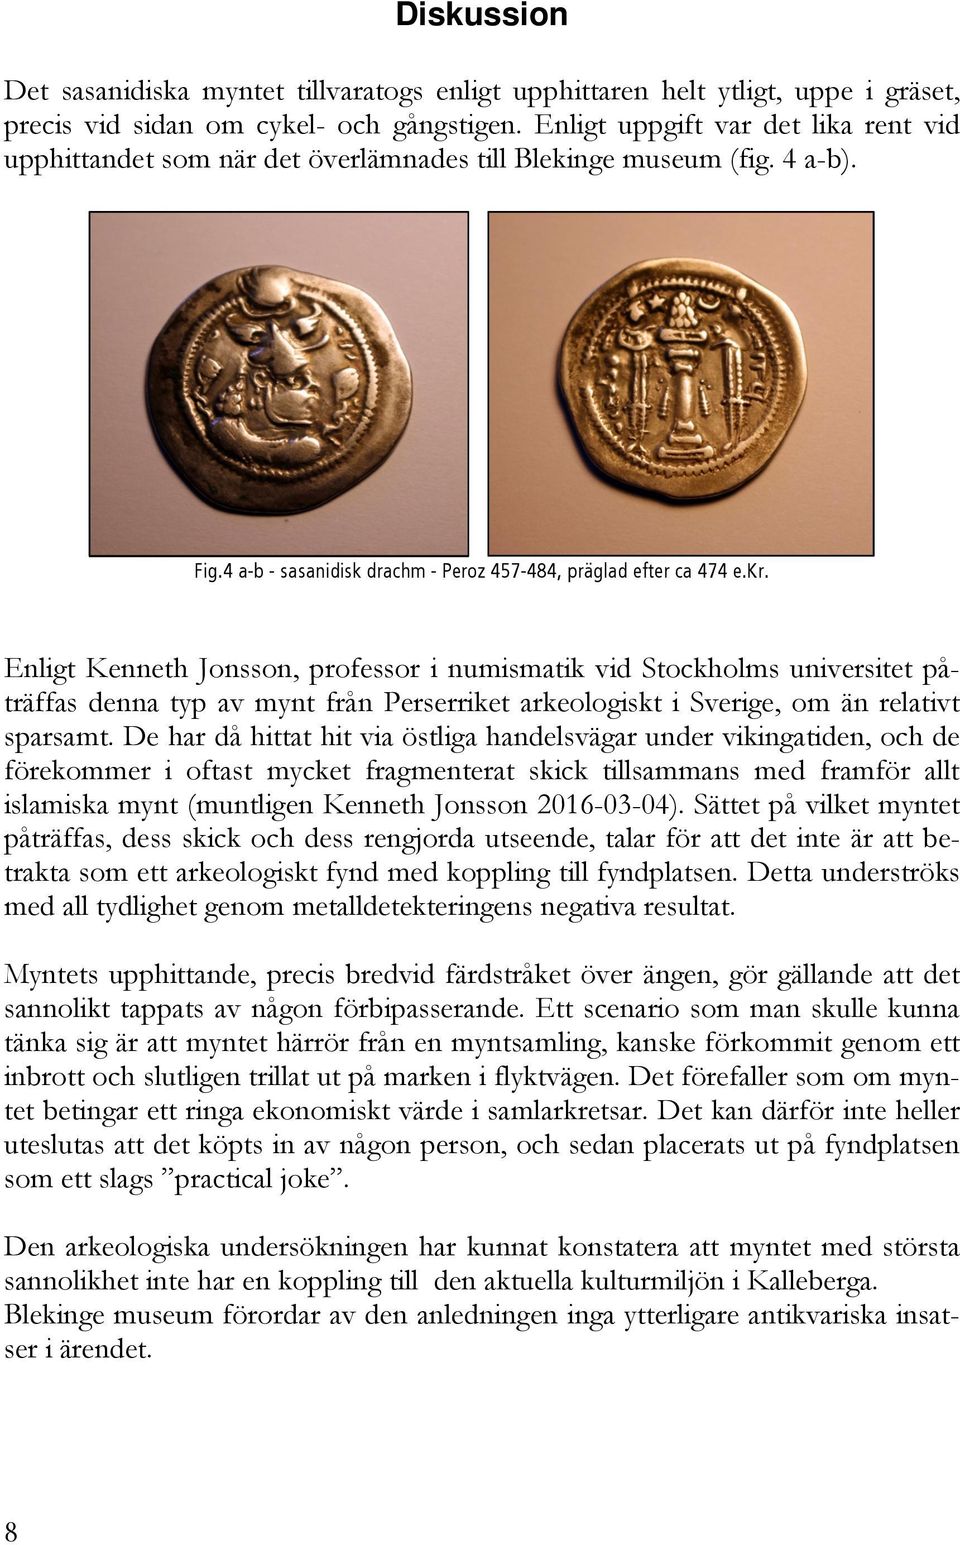 Enligt Kenneth Jonsson, professor i numismatik vid Stockholms universitet påträffas denna typ av mynt från Perserriket arkeologiskt i Sverige, om än relativt sparsamt.